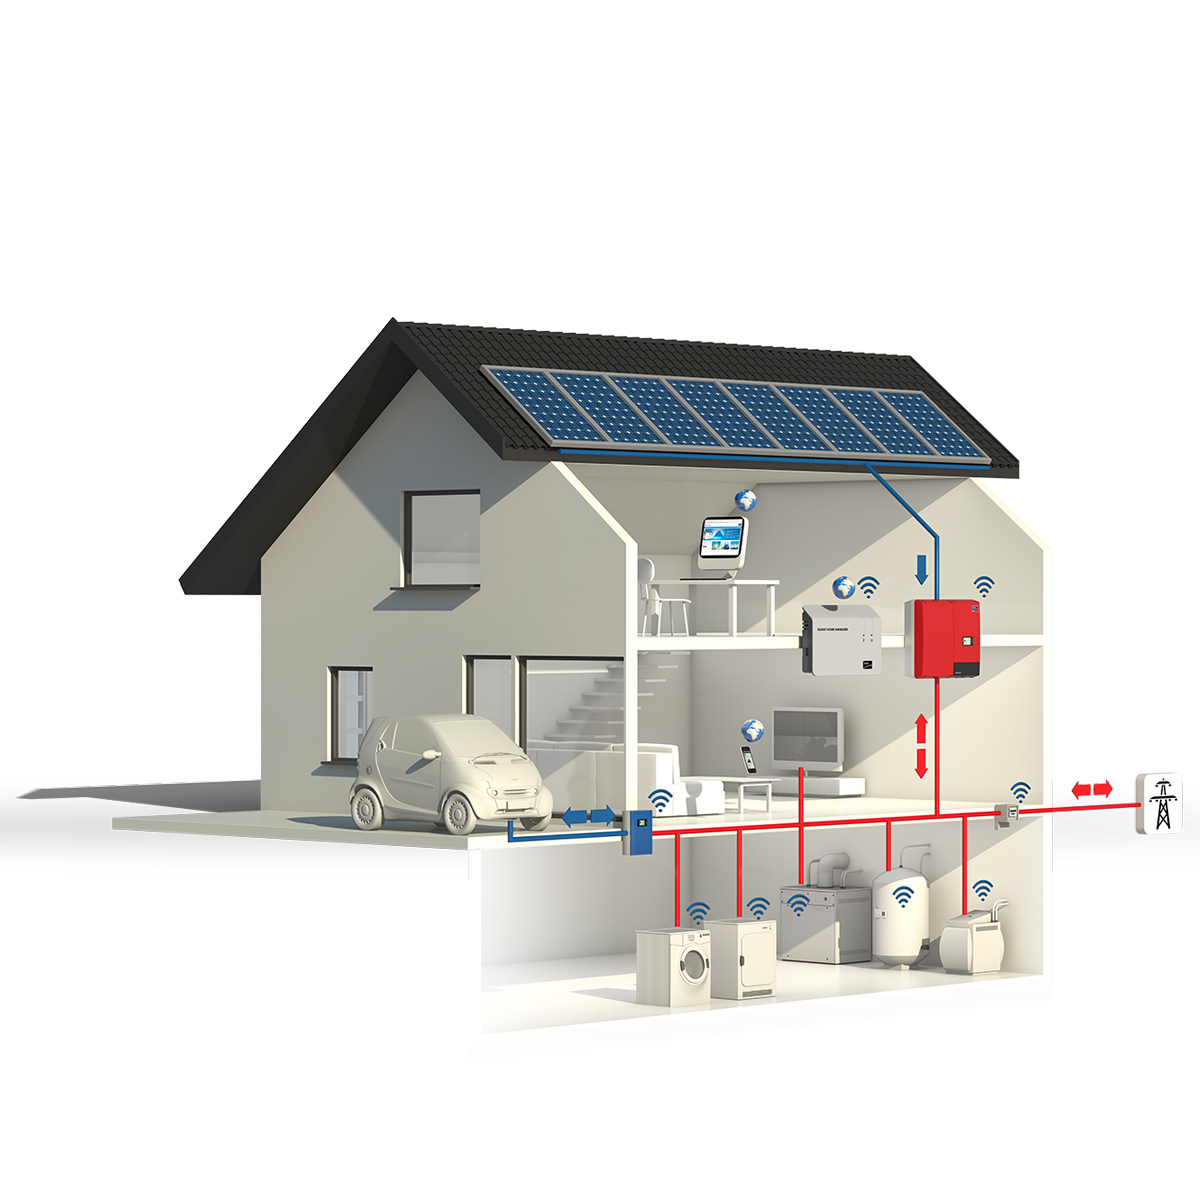 Iskoristite snagu sunca: kompletan solarni energetski sustav za vaš dom